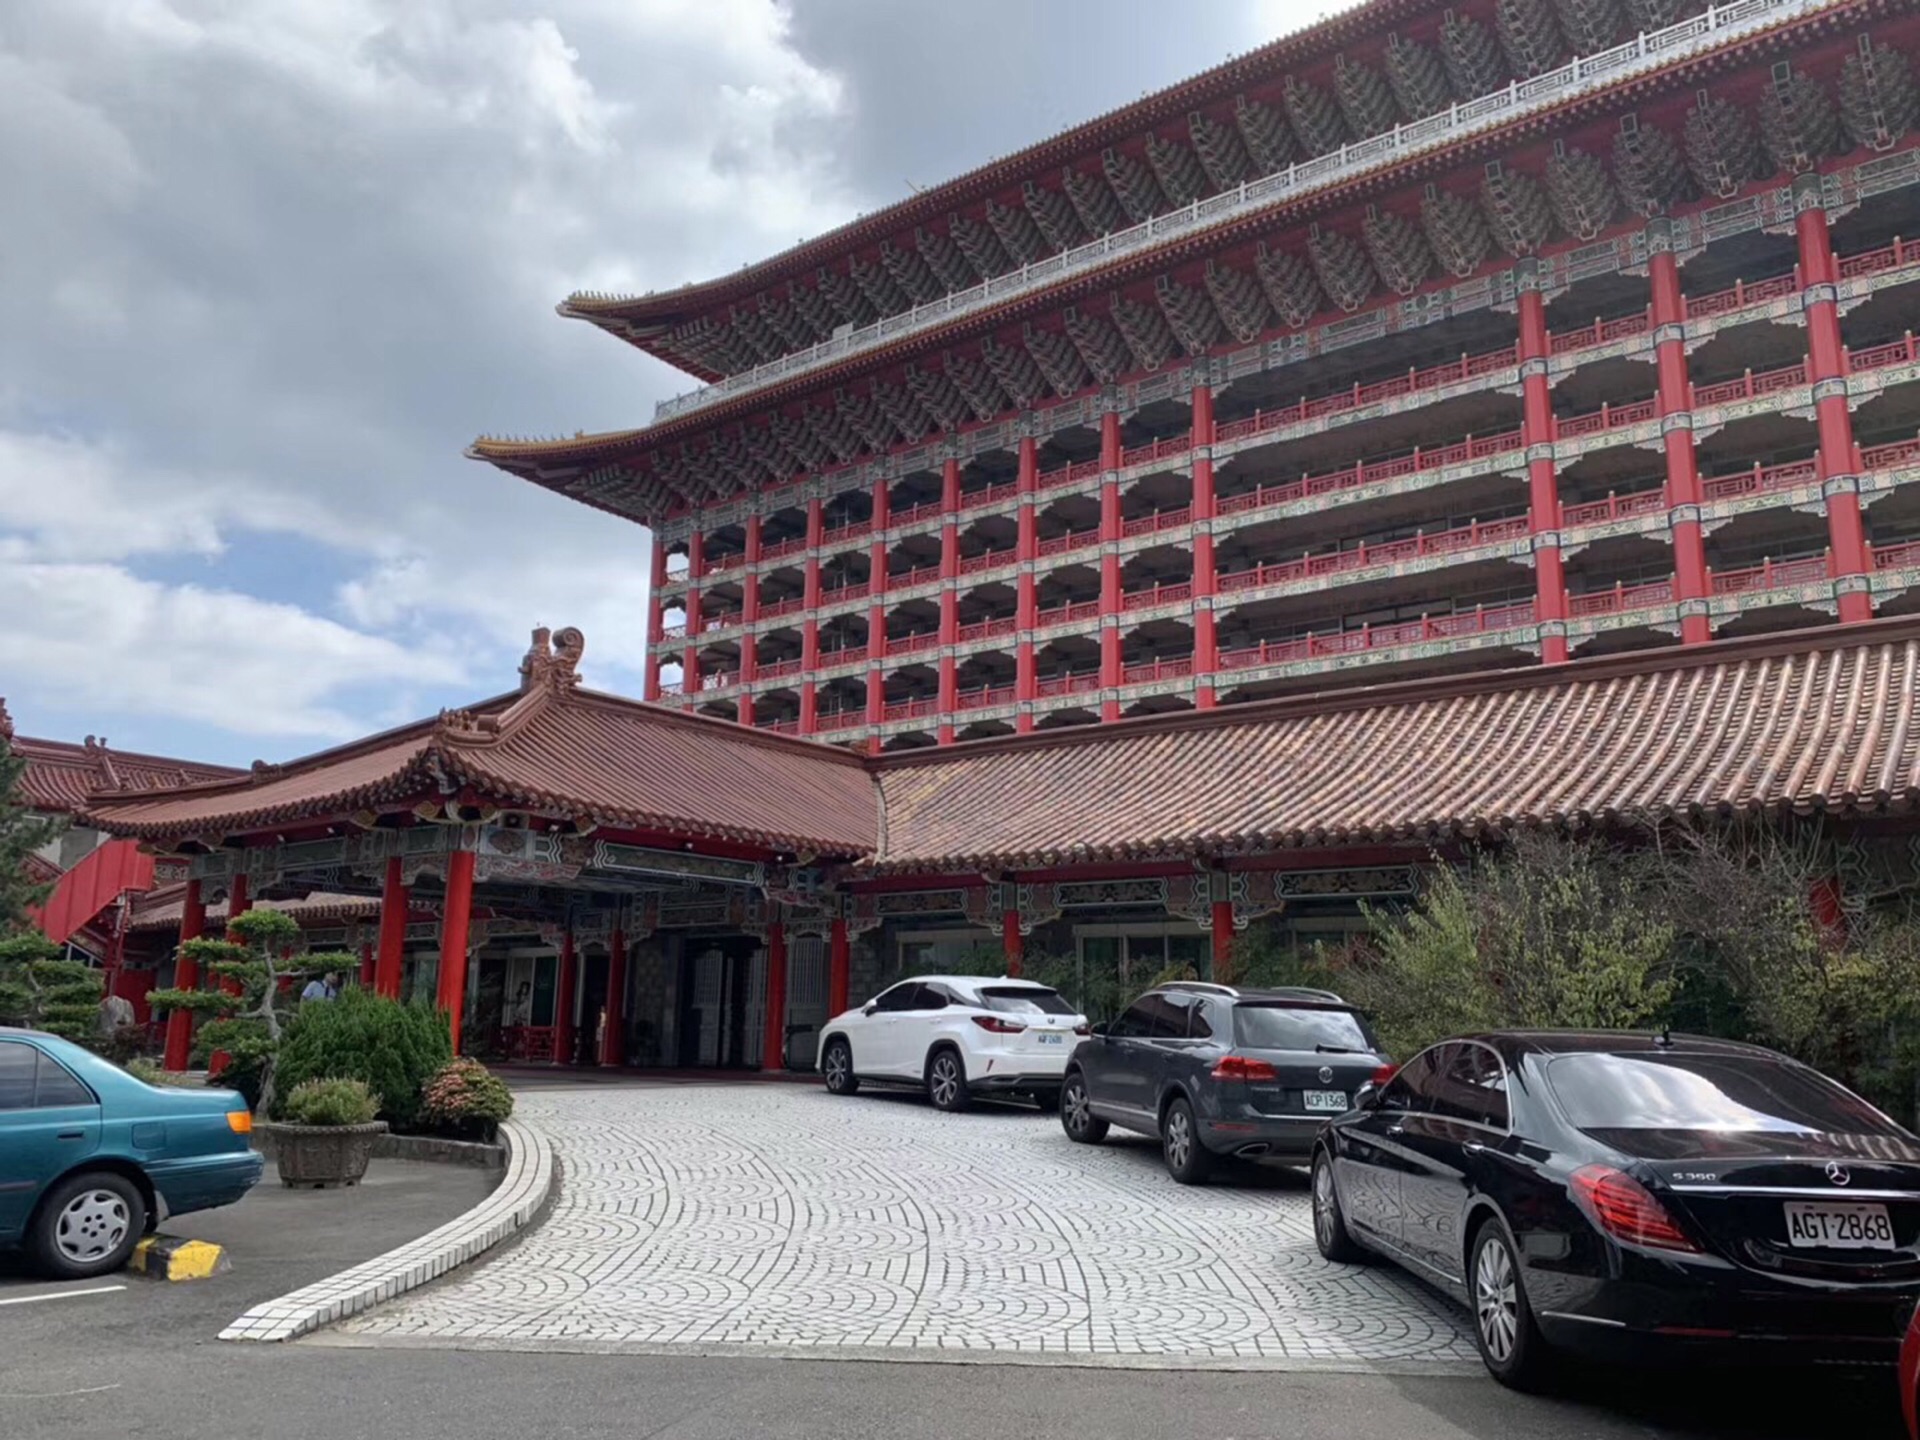 拥有50多年历史的台北圆山饭店,是两蒋时代元首达官的常去之地,因此